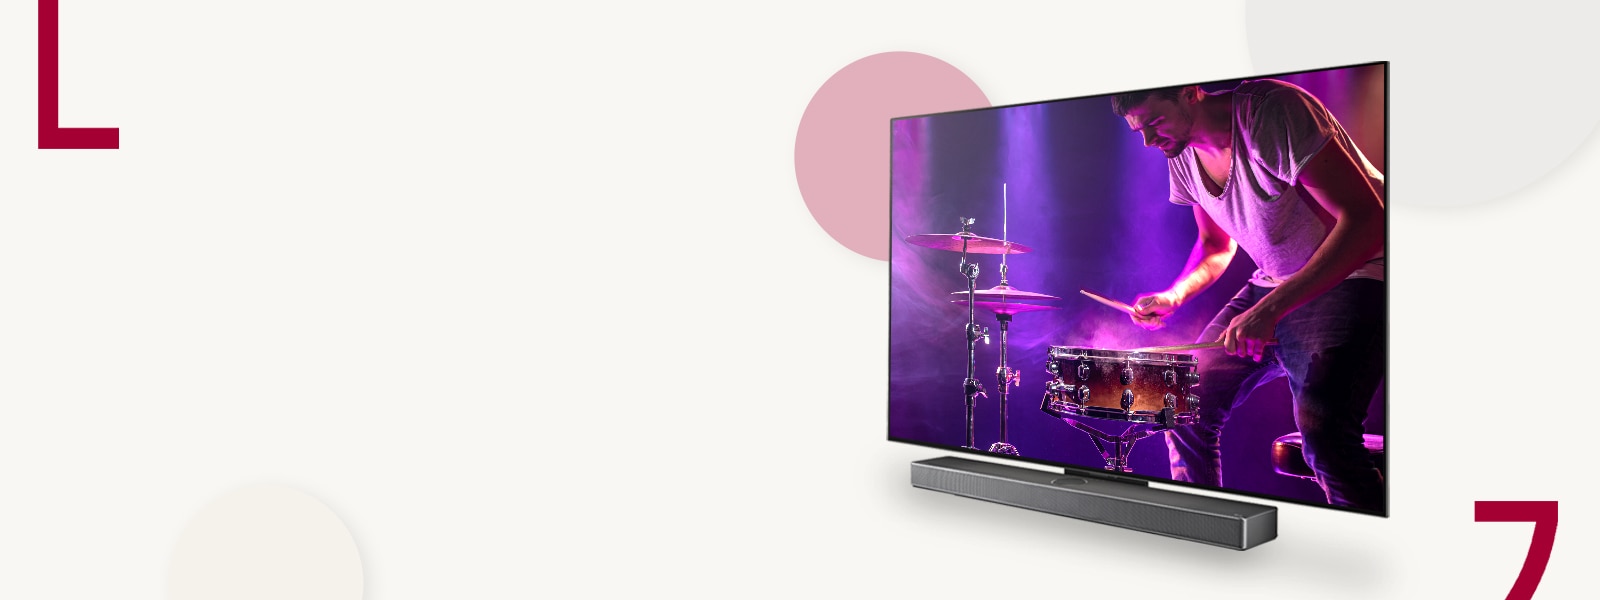 Slika LG OLED evo TV C3 in zvočne vrstice na krem ​​ozadju s pisanimi krogi.  Na zaslonu lahko vidite moškega, ki igra bobne.